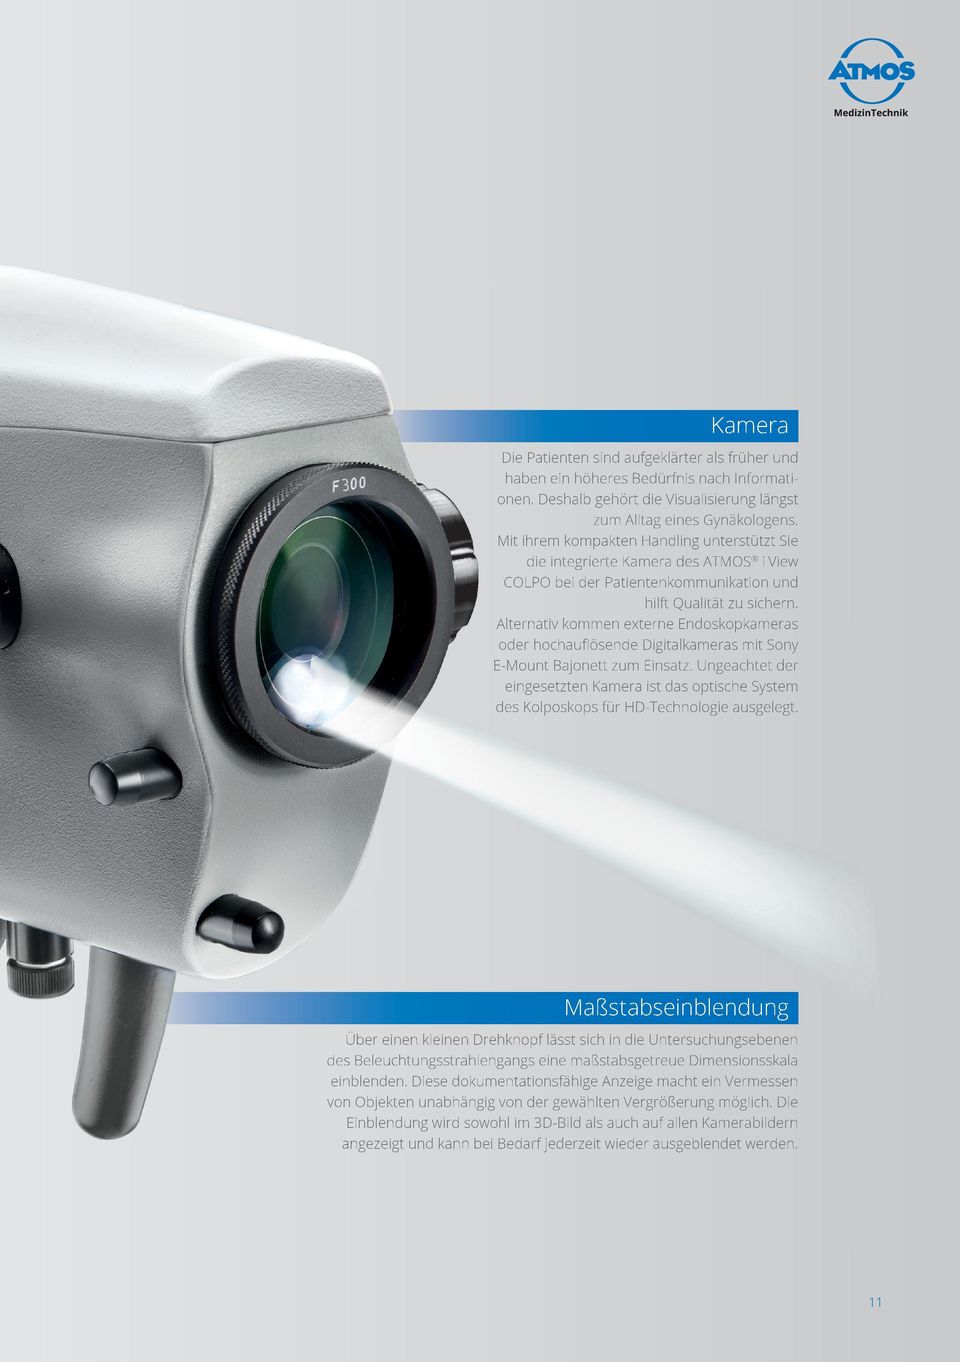 Alternativ kommen externe Endoskopkameras oder hochauflösende Digitalkameras mit Sony E-Mount Bajonett zum Einsatz.